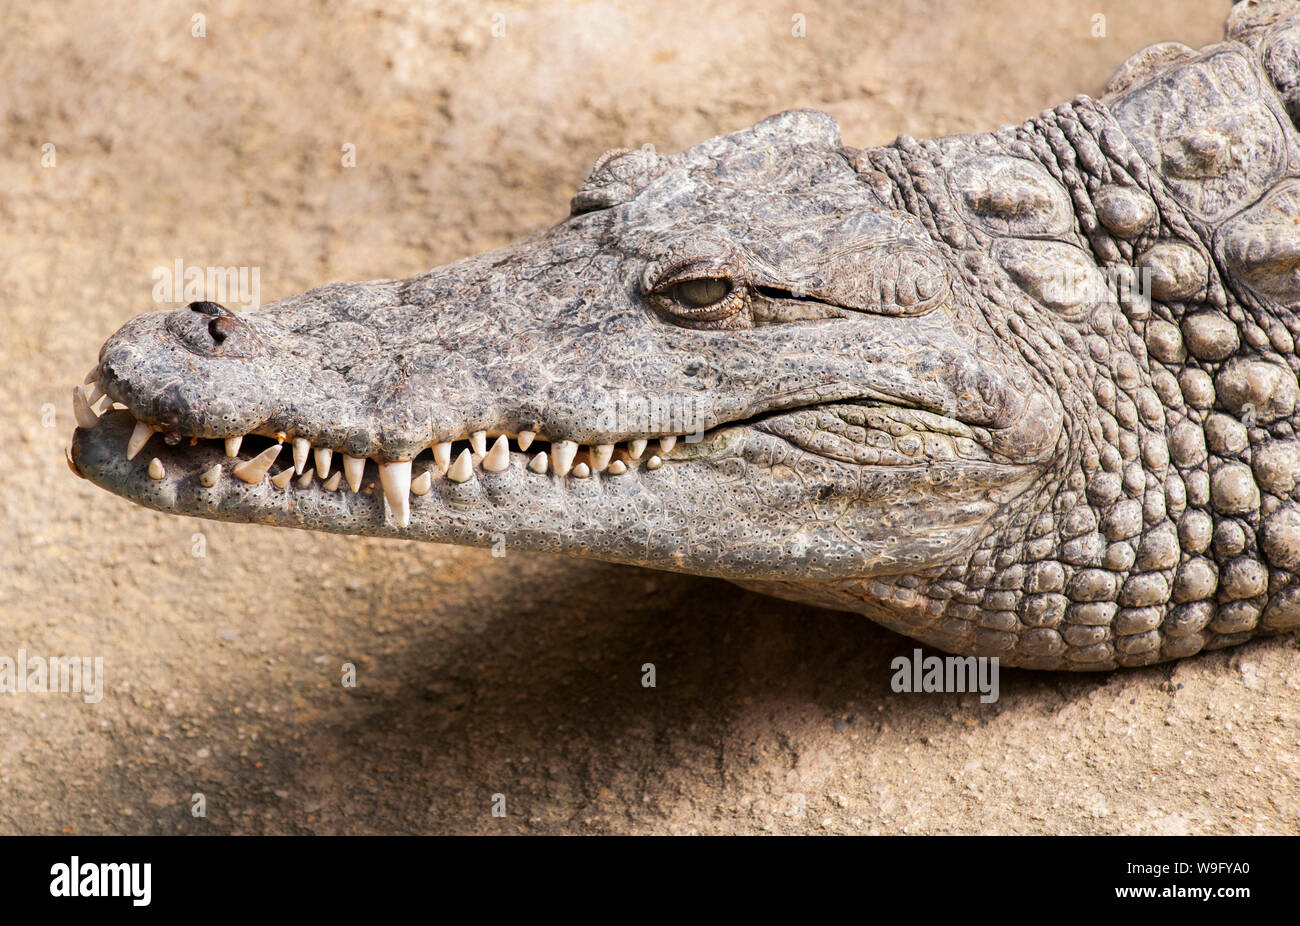 Detalle de cabeza de cocodrilo del Nilo, Crocodylus niloticus, África Foto de stock